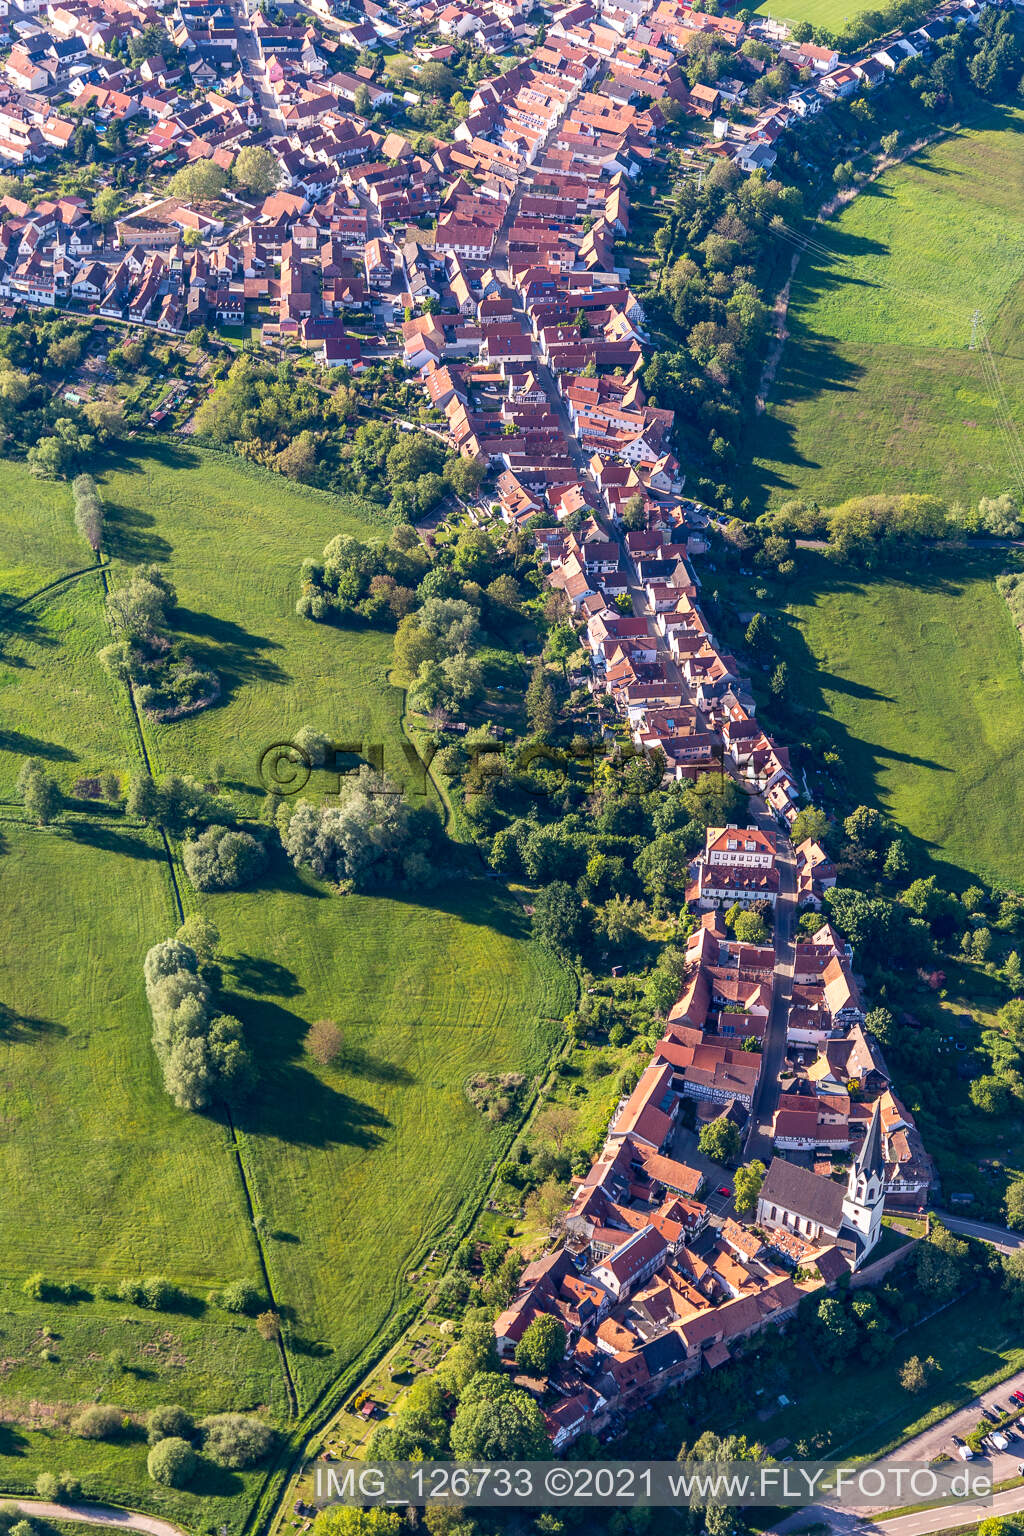 Luftbild von Ludwigstr in Jockgrim im Bundesland Rheinland-Pfalz, Deutschland